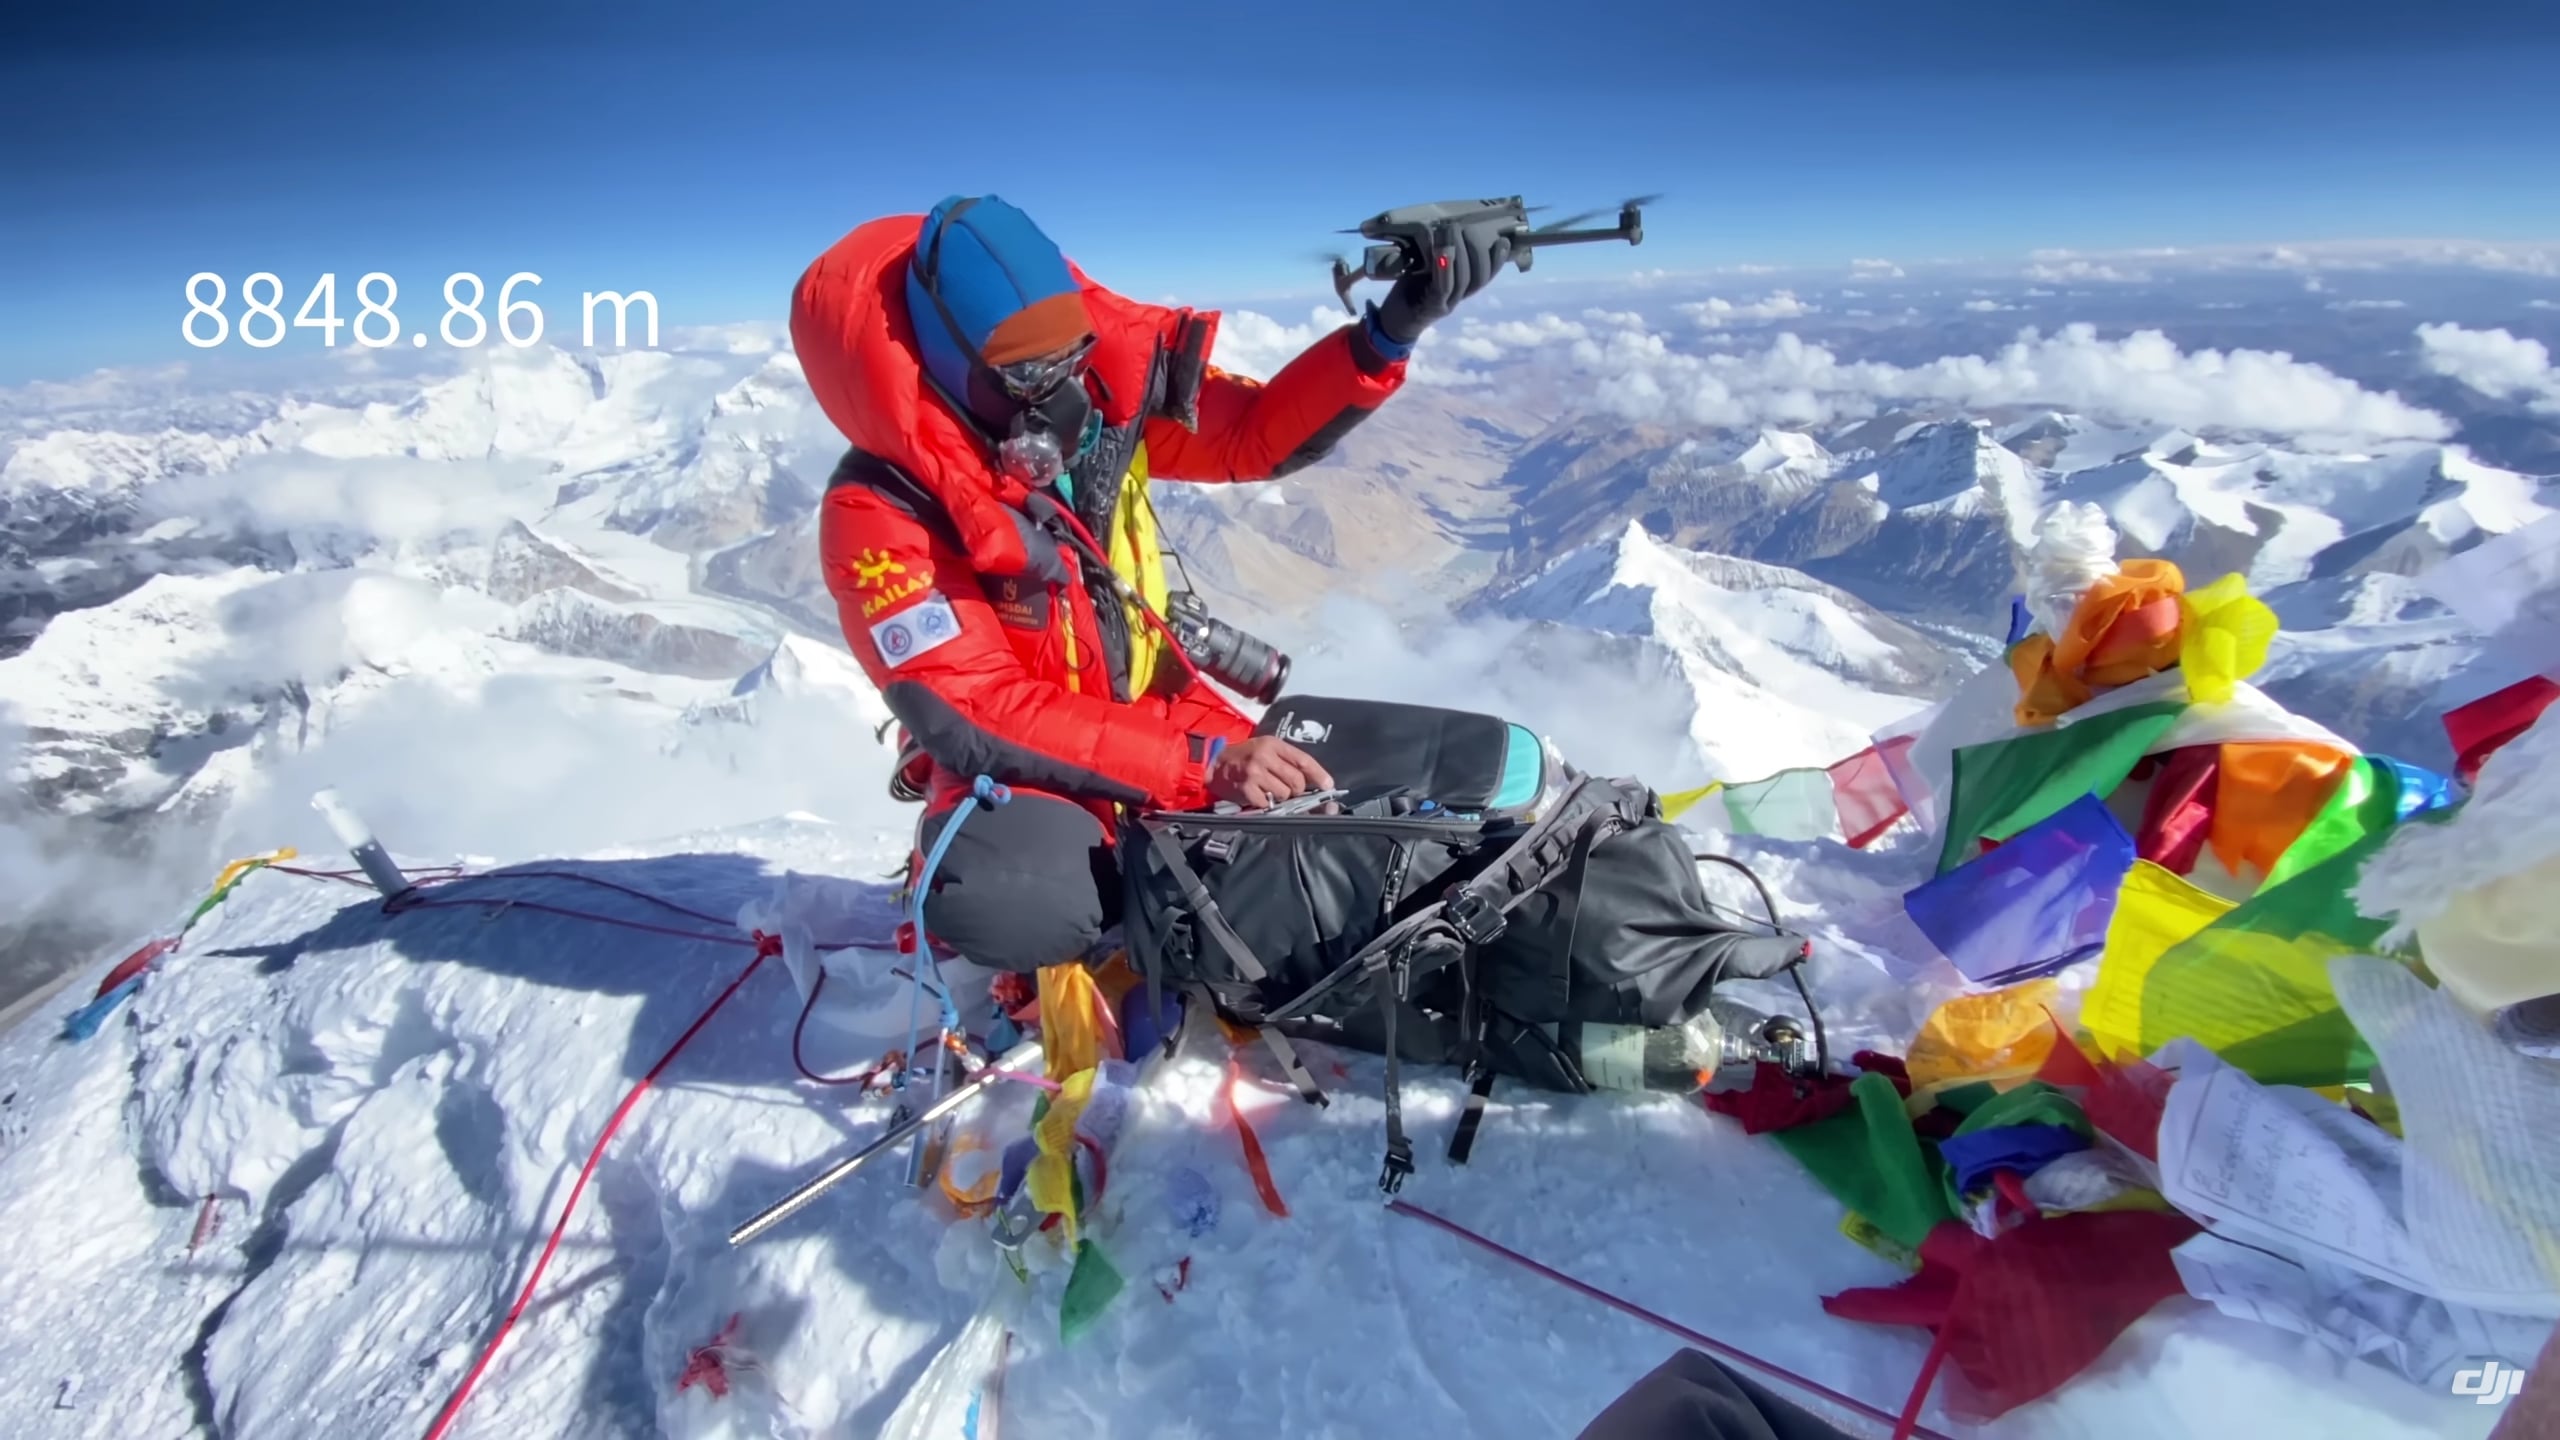 Cùng xem video DJI Mavic 3 bay lượn trên nóc nhà thế giới - Đỉnh núi Everest